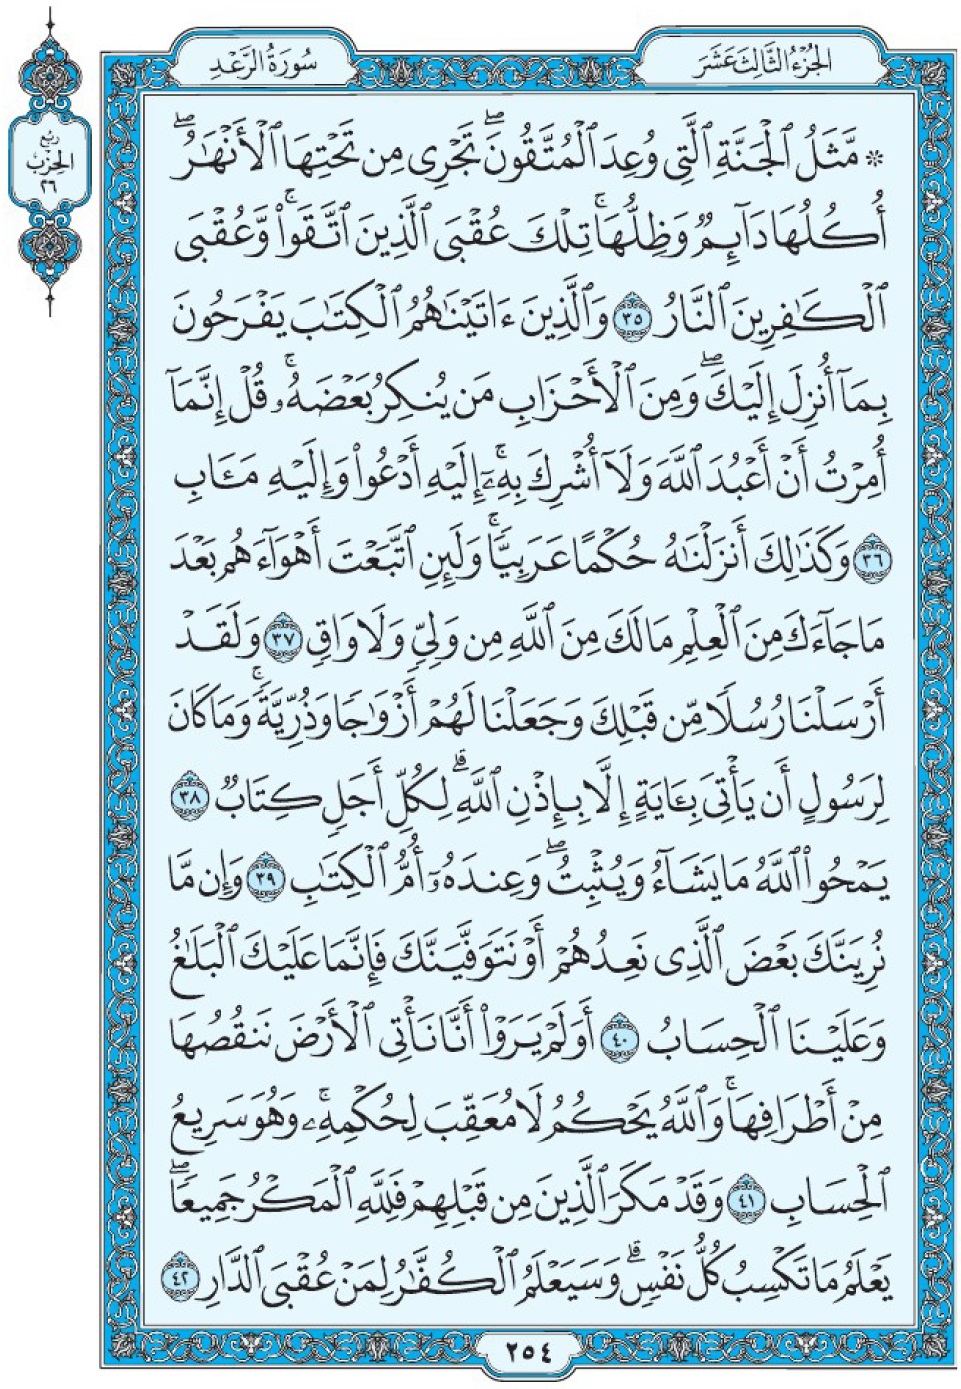 Коран Мединский мусхаф страница 254, Ар-Ра‘д, аят 35-42